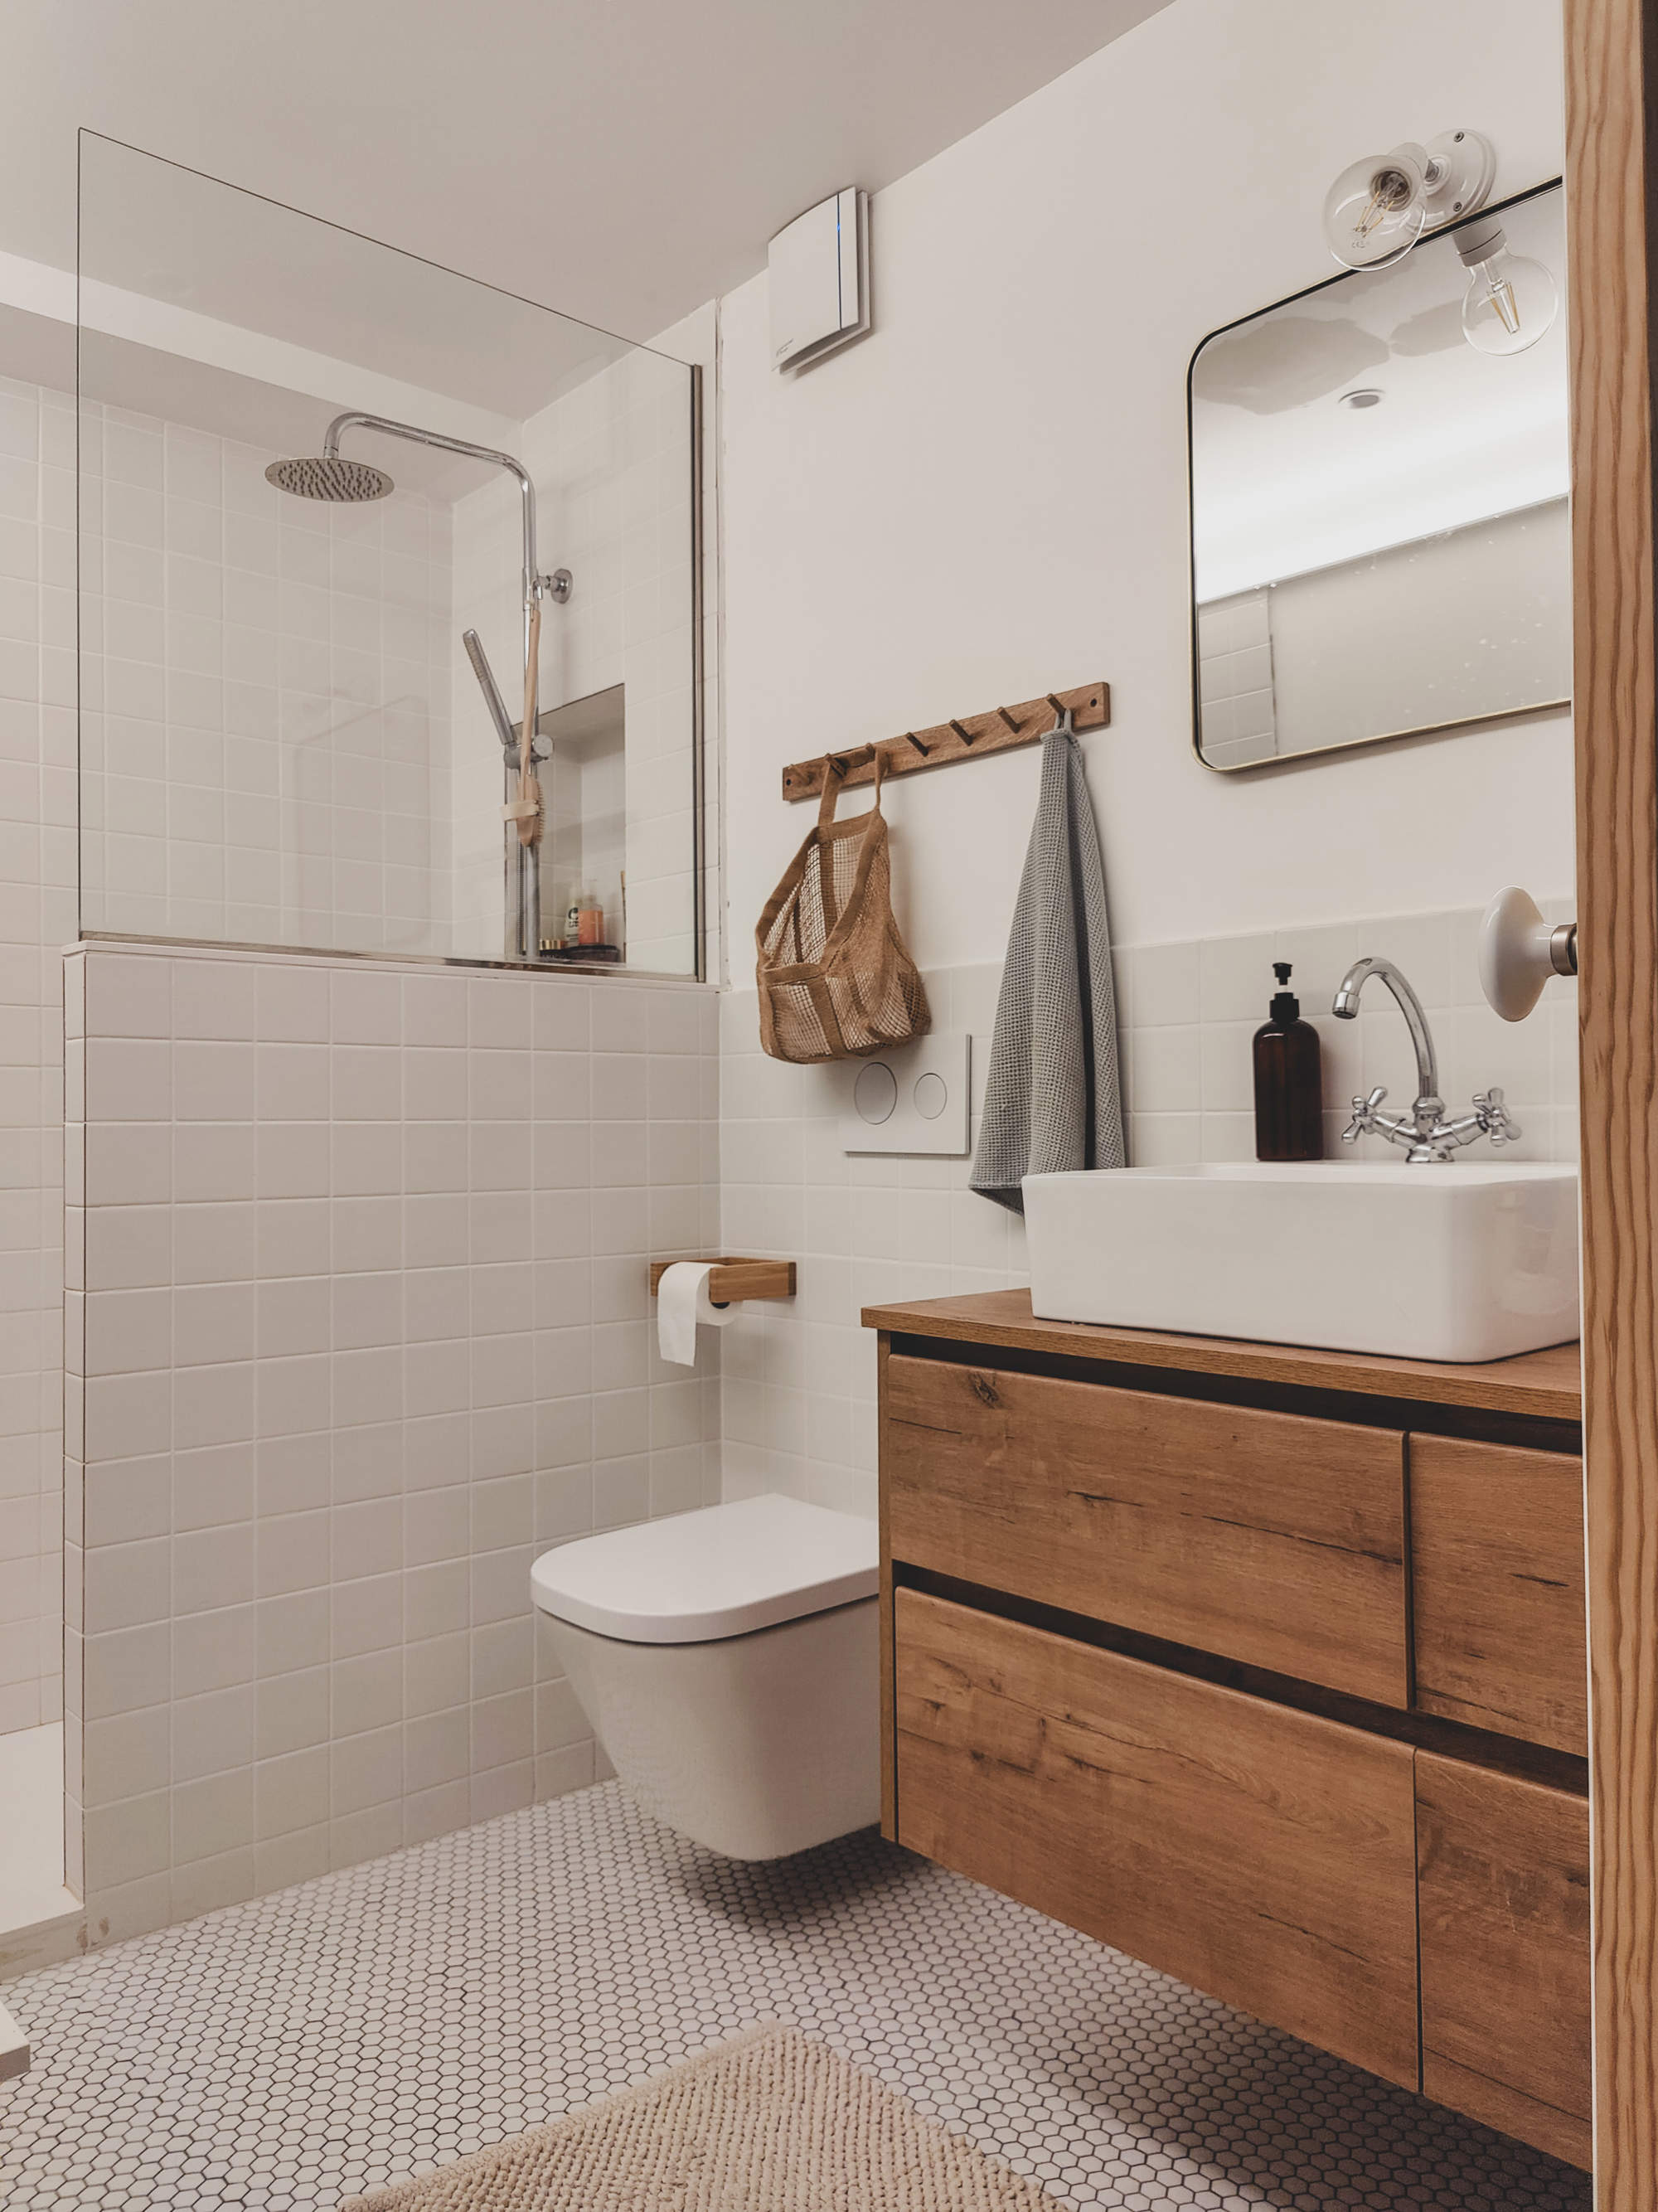 Baño con mueble bajolavabo volado de madera, azulejos a cuadros en el pavimento, ducha con mampara y murete.